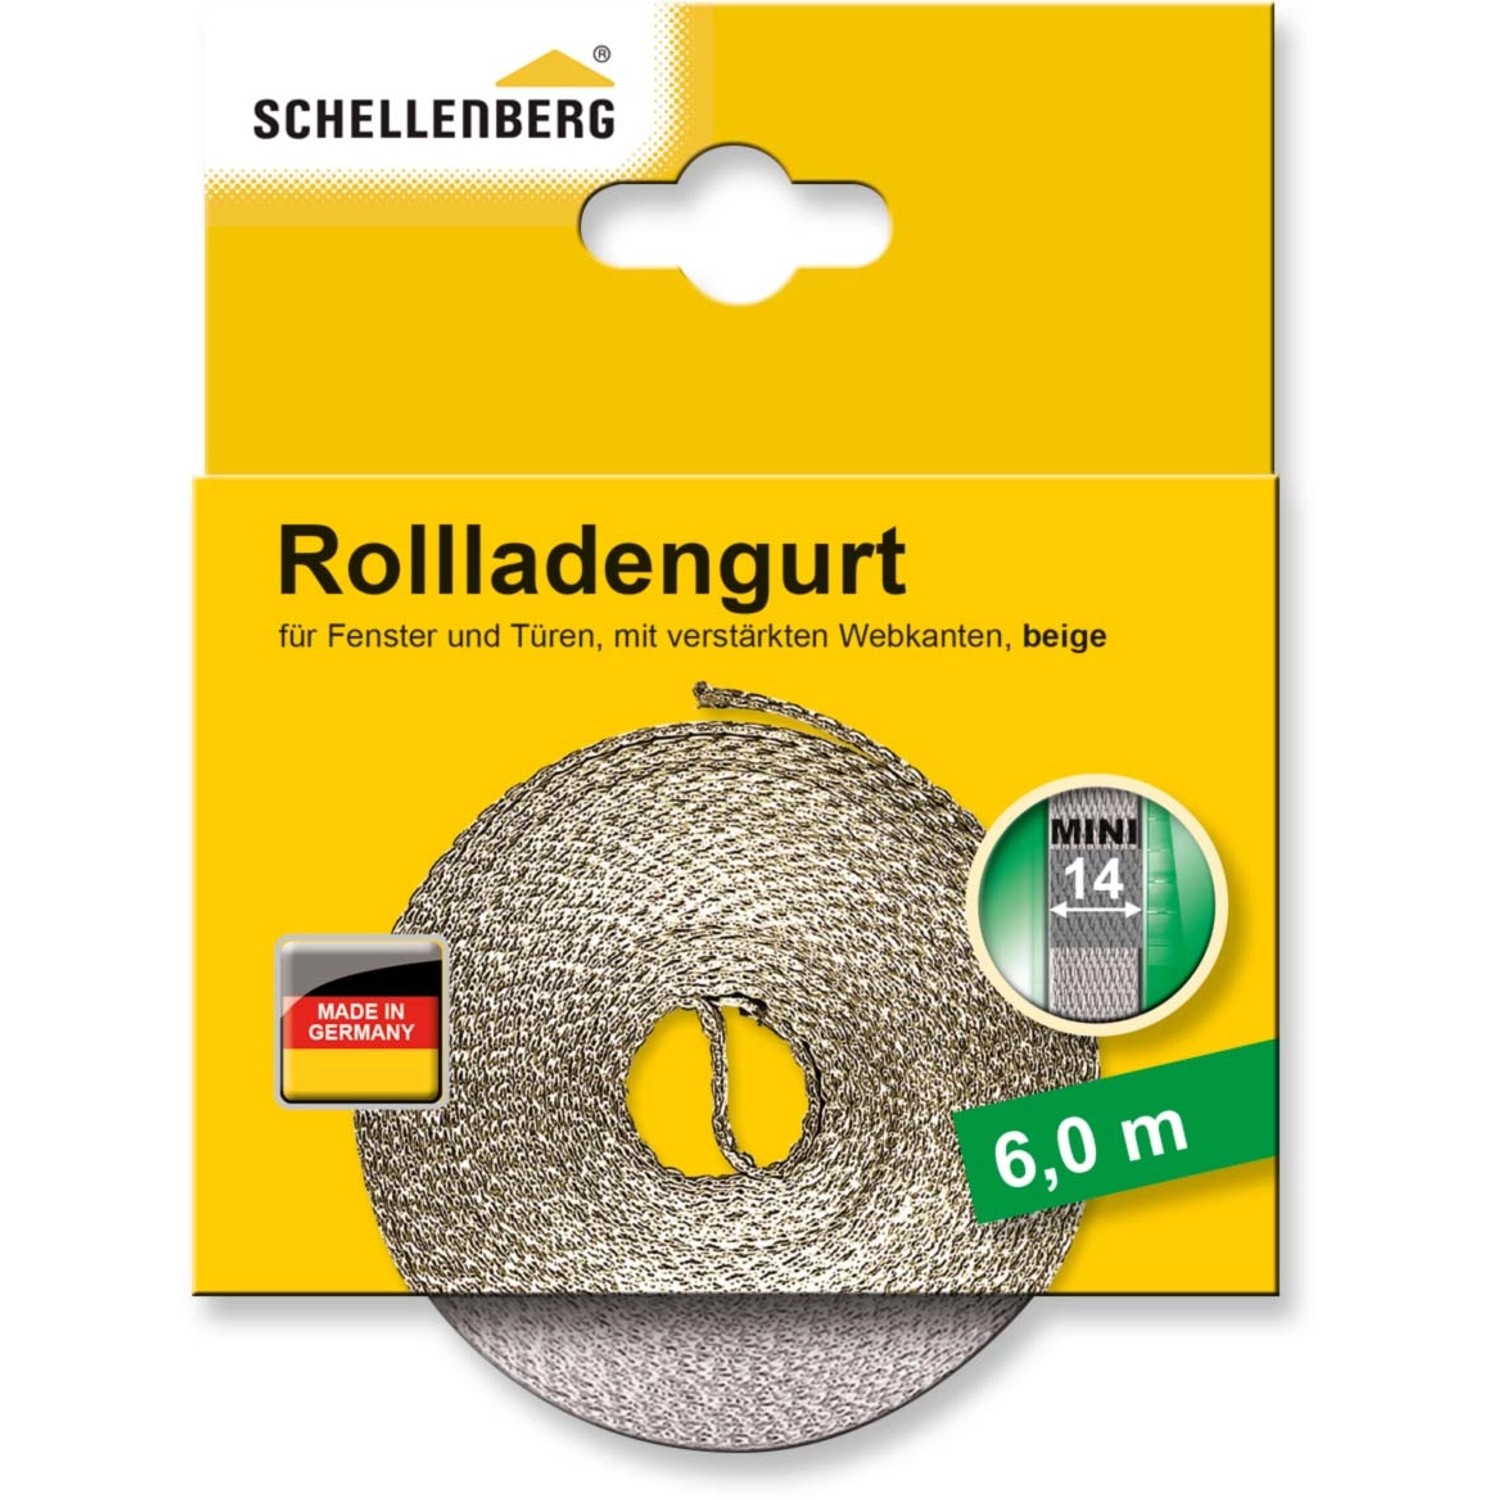 Schellenberg Rollladengurt Mini 14 mm 6 m Beige von Schellenberg